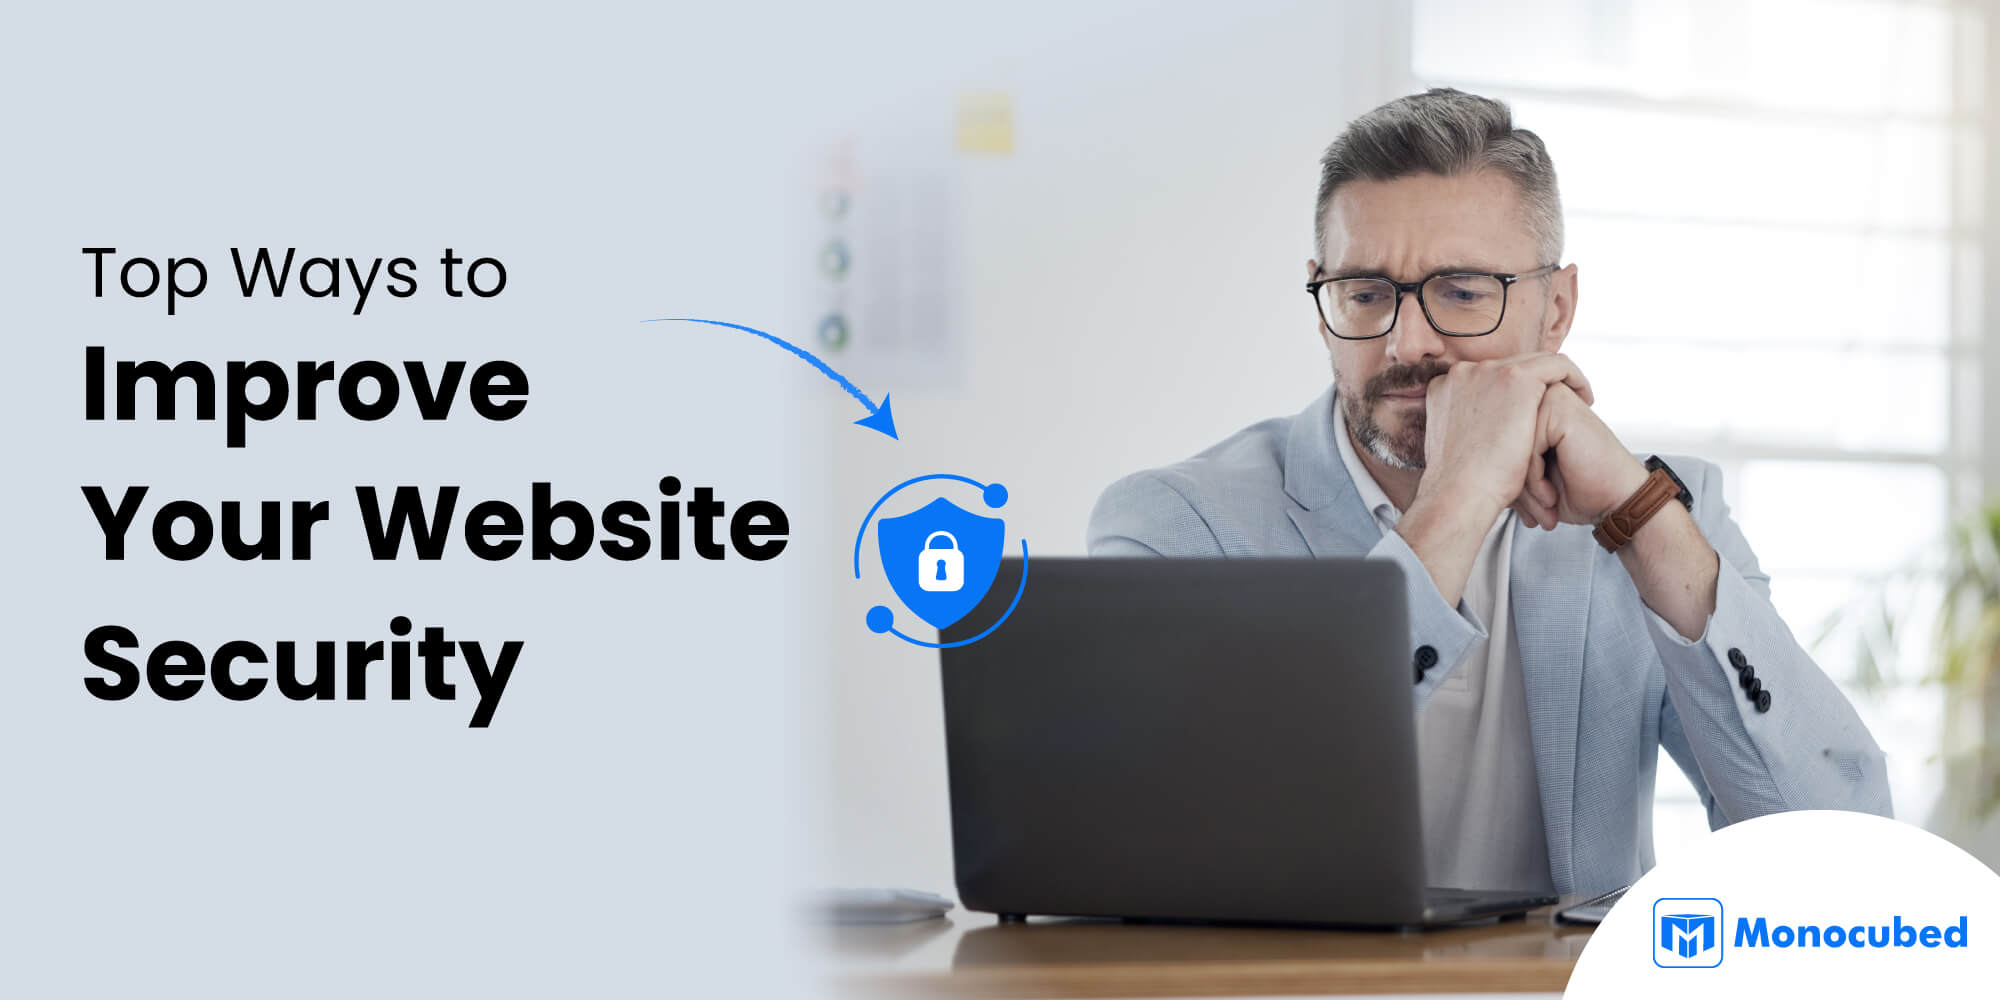 Top Ways to Improve Your Website Security